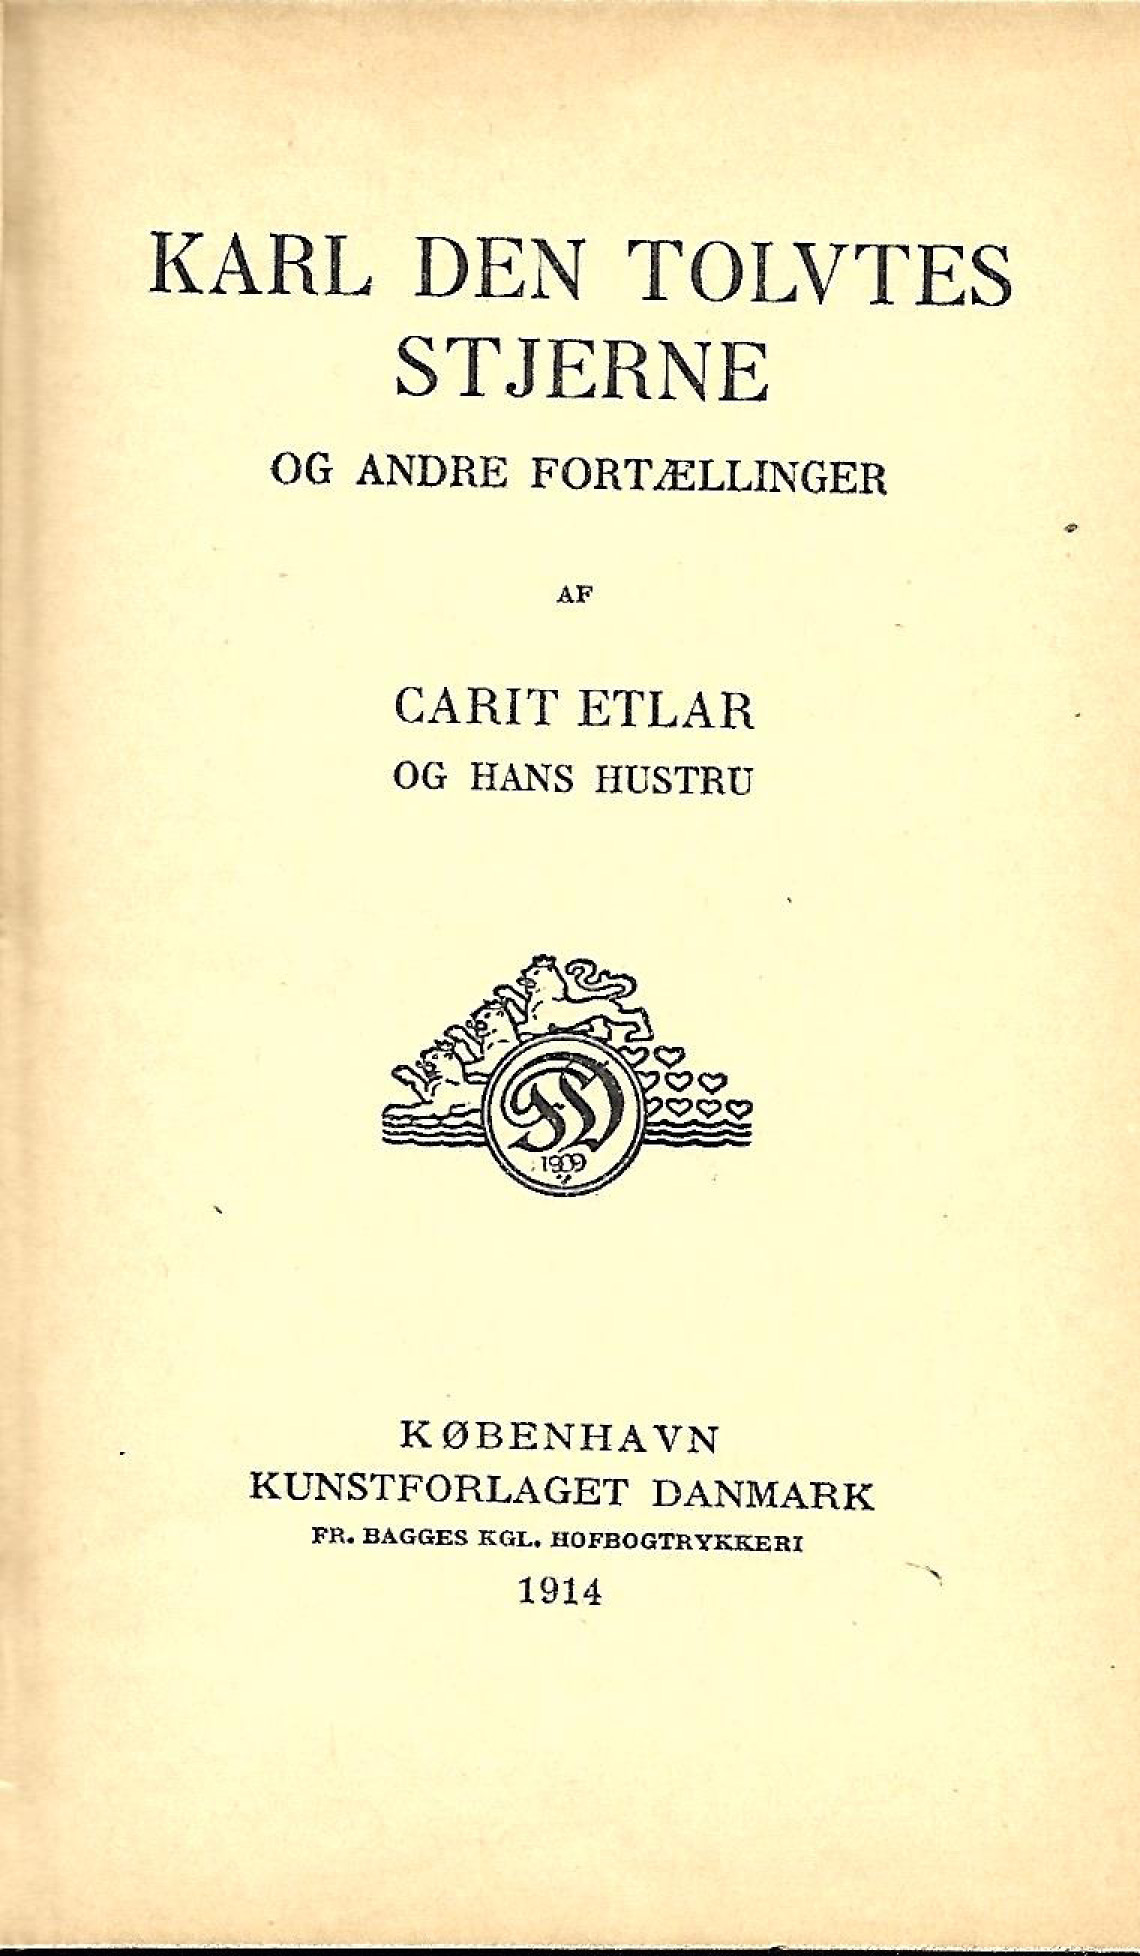 Karl den Tolvtes Stjerne 1914 - Carit Etlar og hustru-1